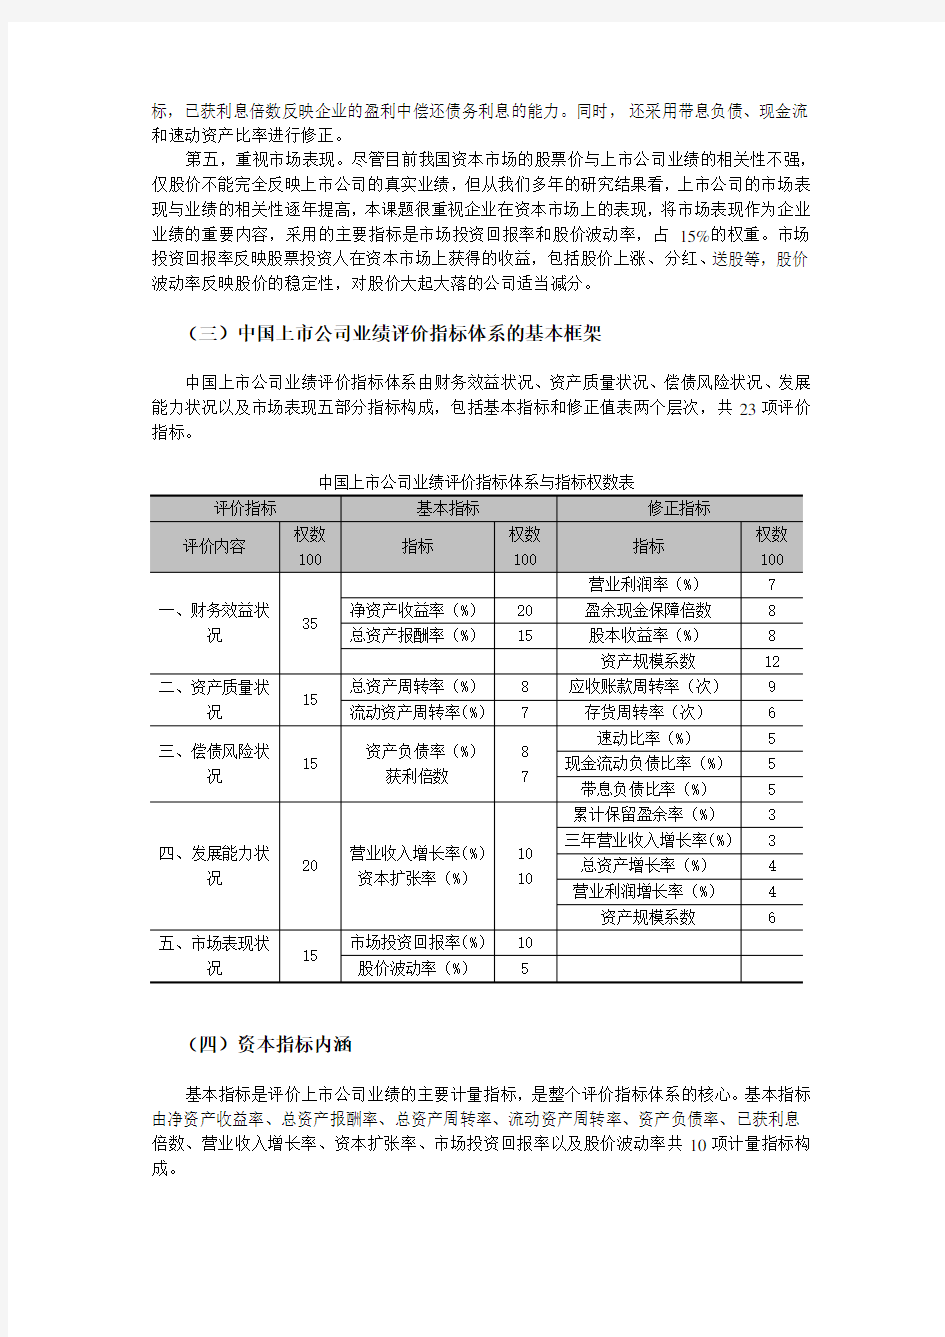 中国上市公司业绩评价指标体系